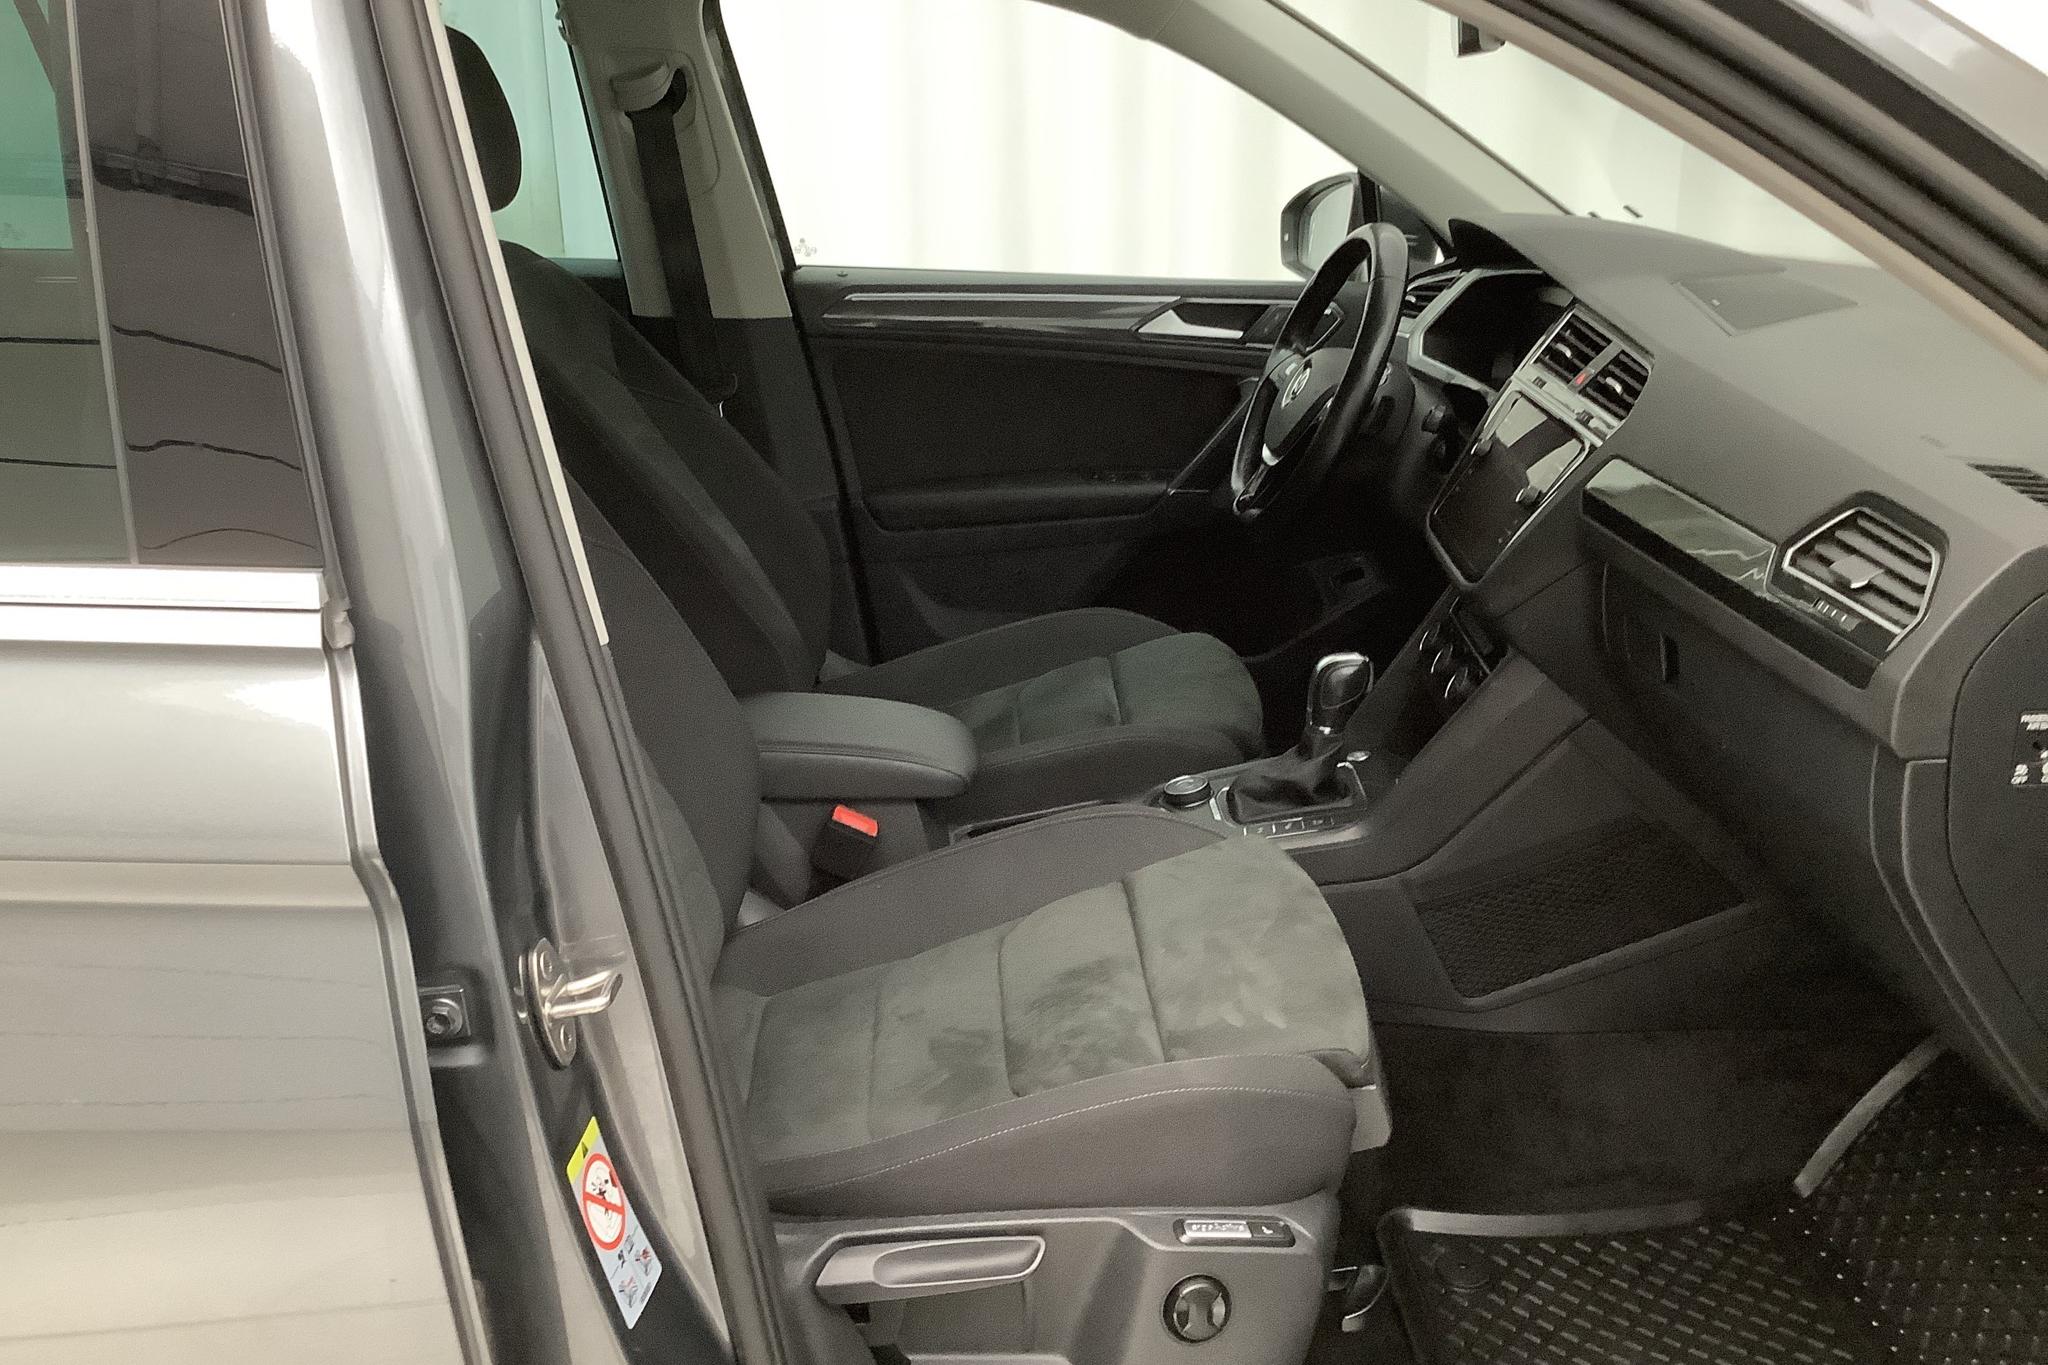 VW Tiguan 2.0 TDI 4MOTION (190hk) - 9 303 mil - Automat - silver - 2018